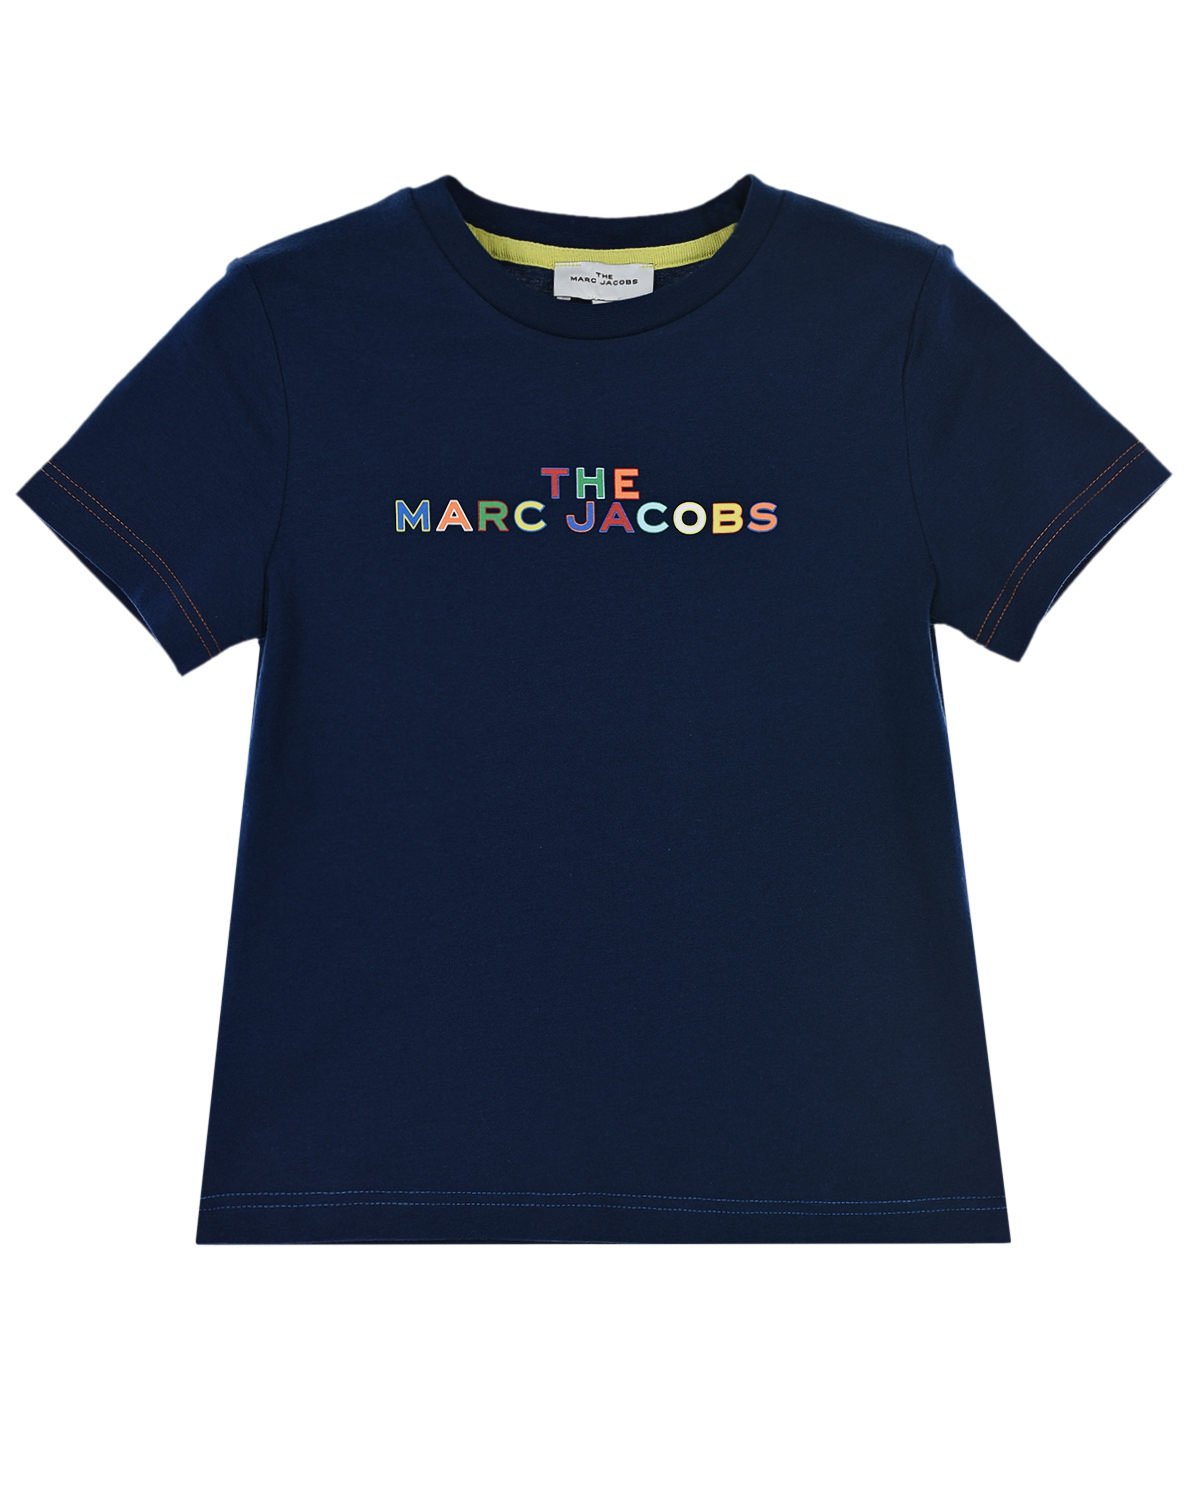 Футболка с разноцветным логотипом Marc Jacobs (The) детская, размер 128 Футболка с разноцветным логотипом Marc Jacobs (The) детская - фото 1